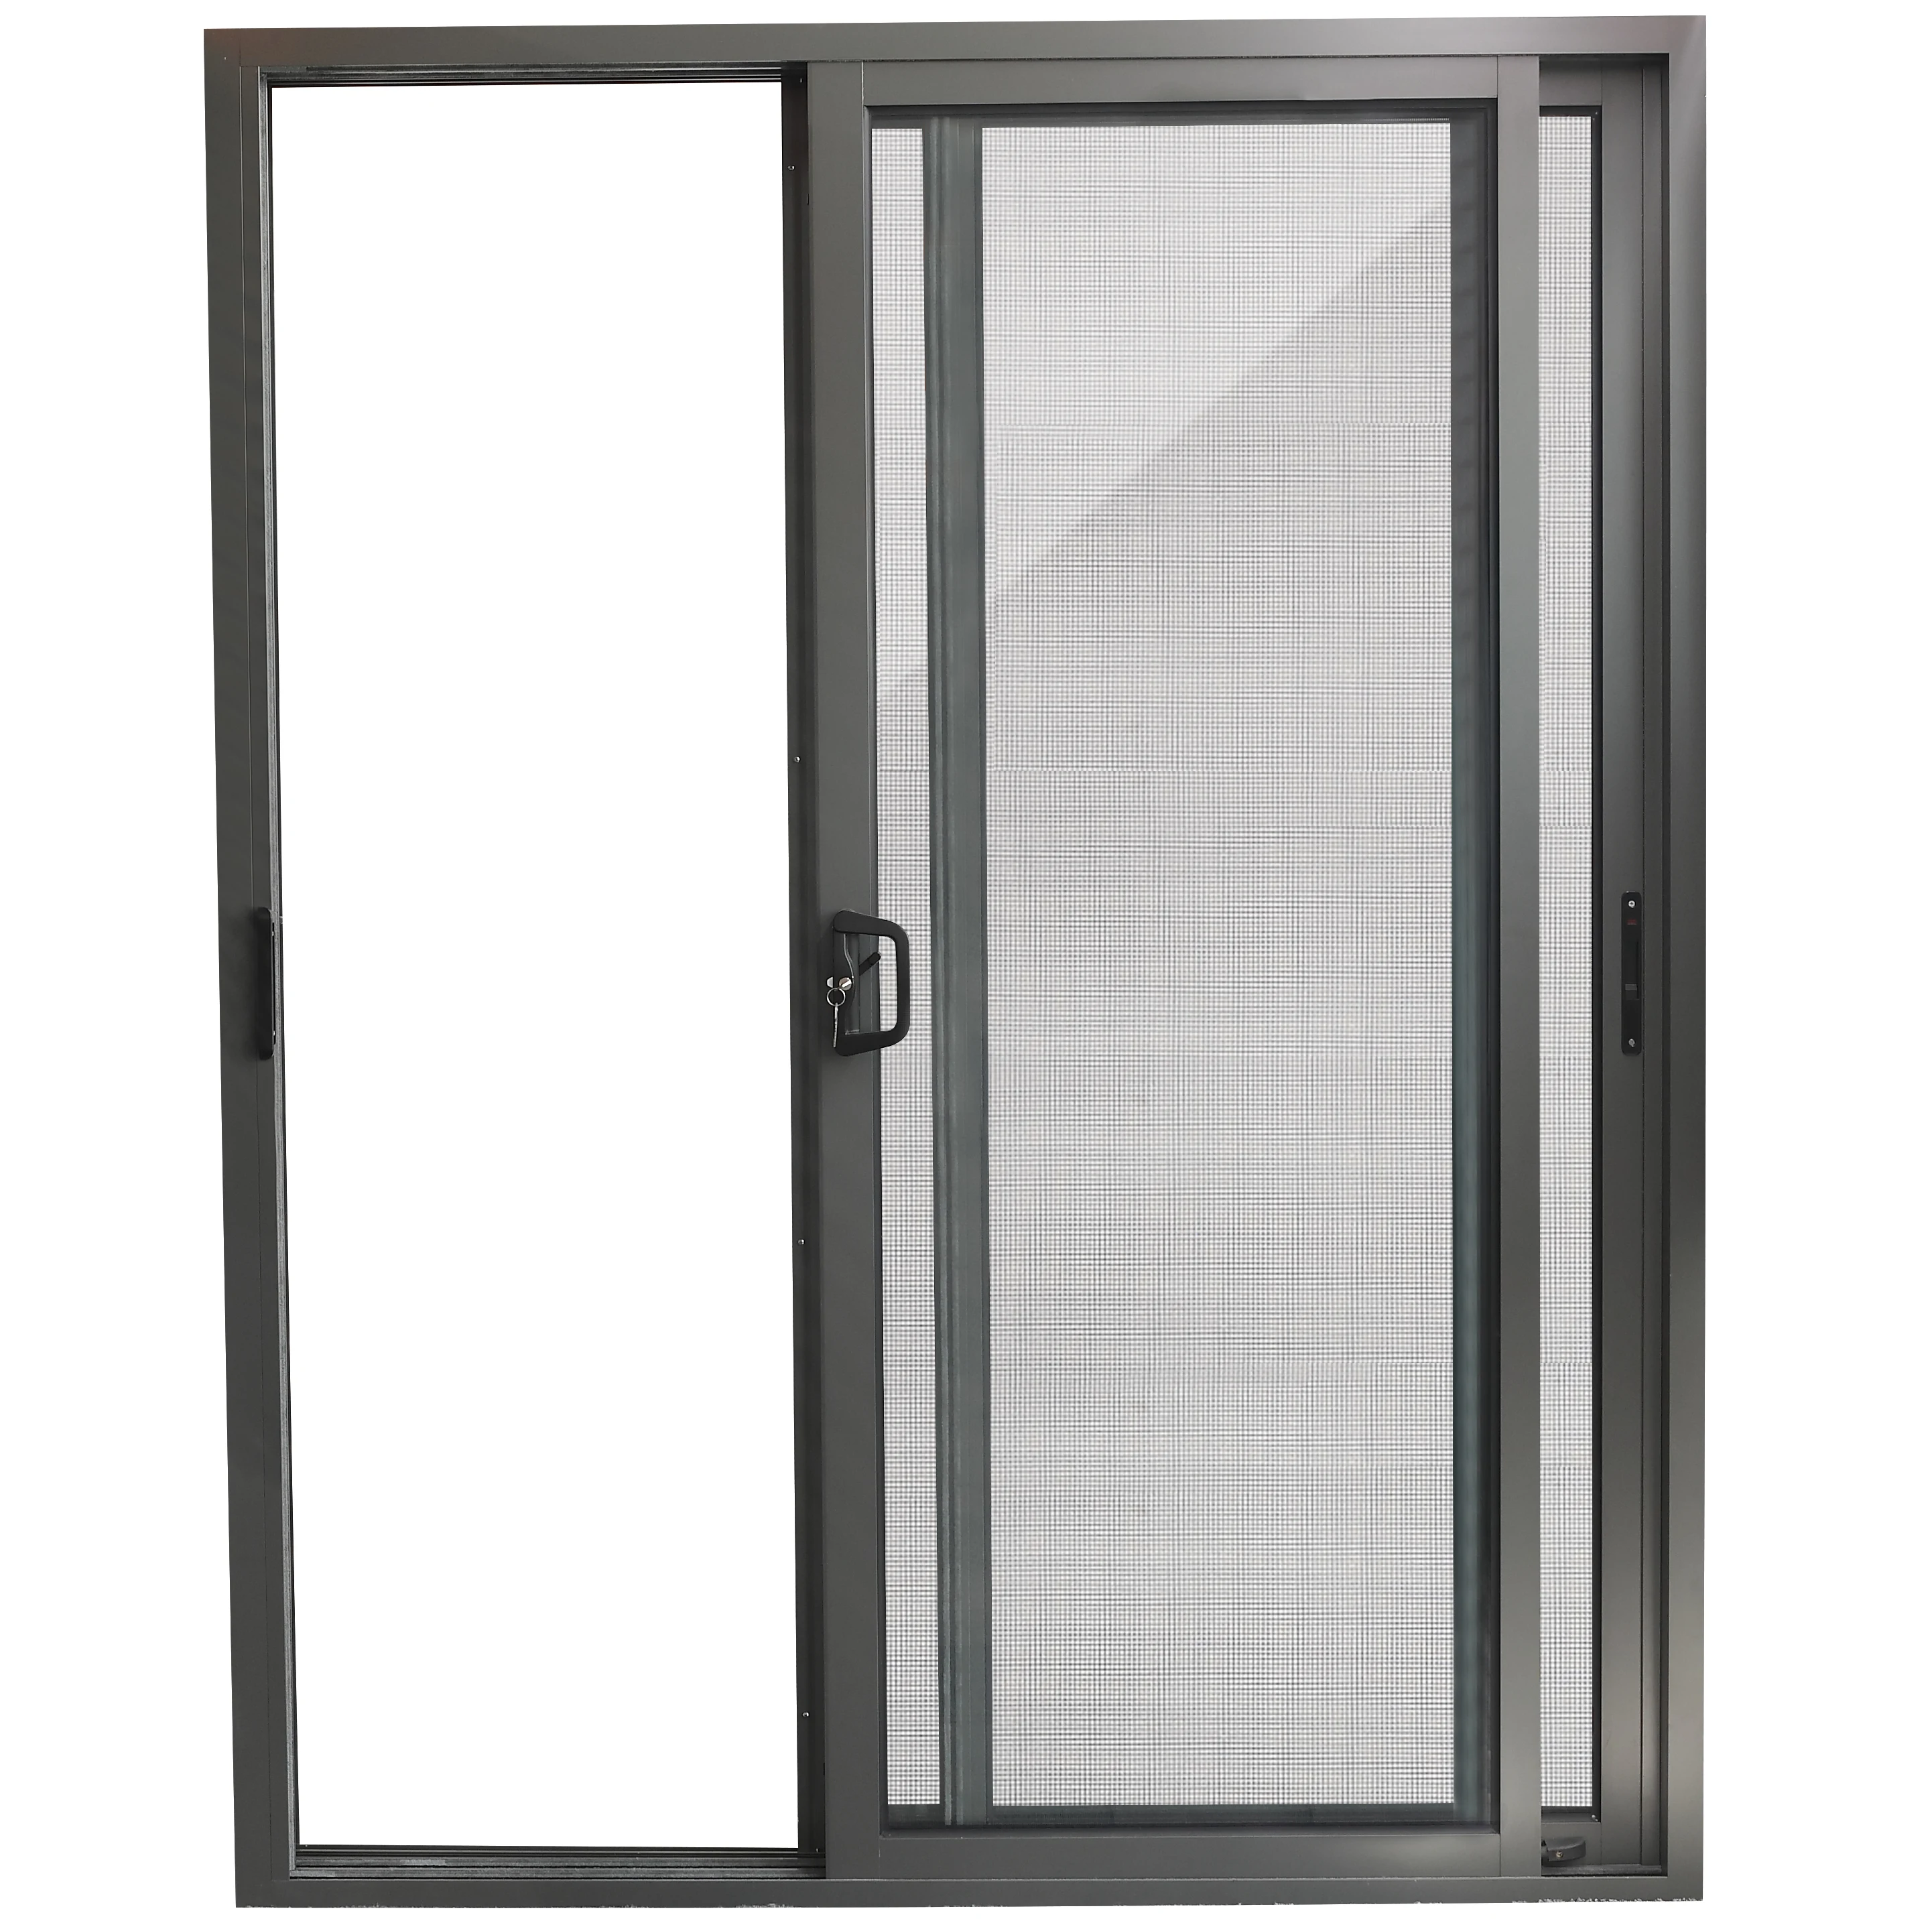 Newest Exterior Bathroom Glass Door Design Philippines Prices Buy Glass Sliding Door